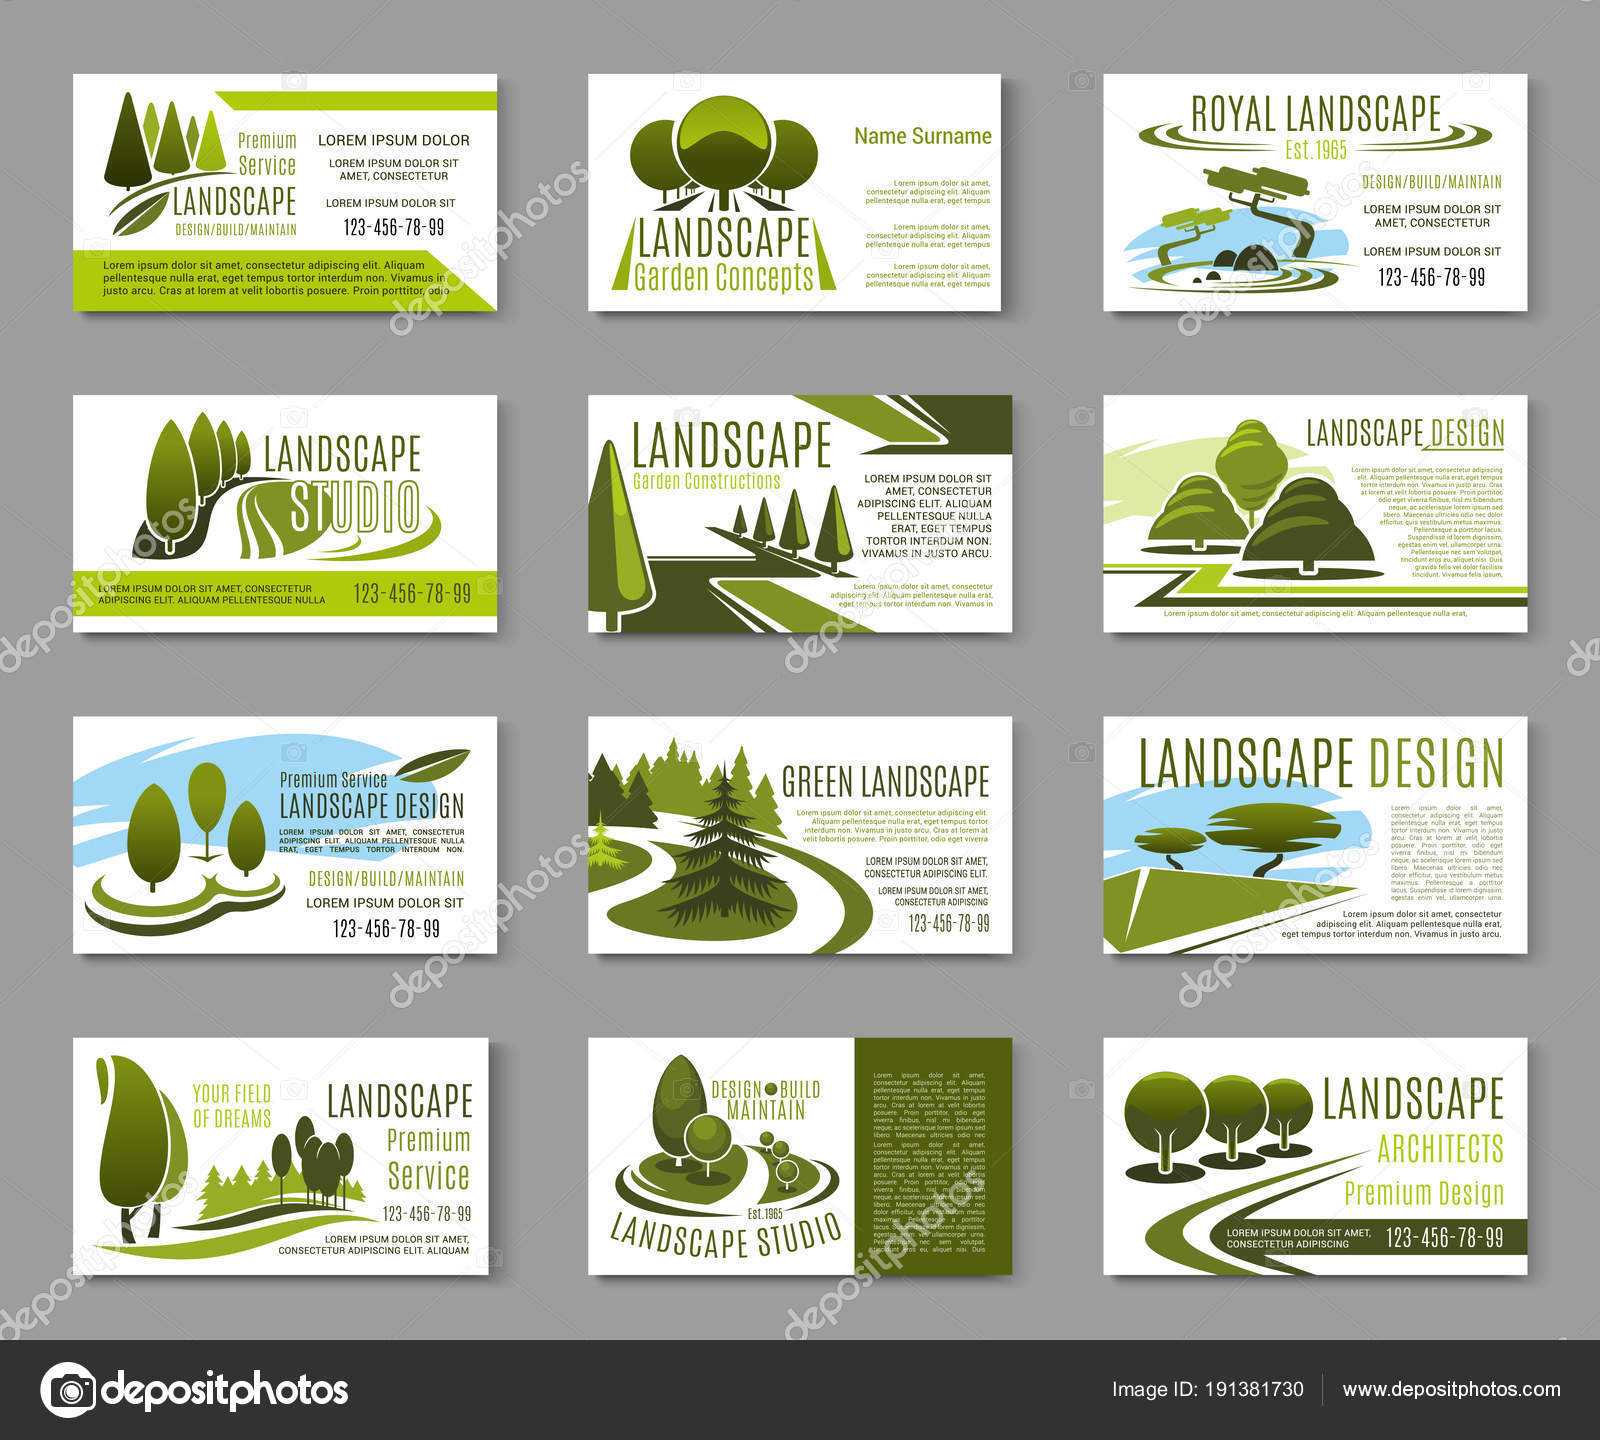 Landscape Design Business Cards | Landscape Design Studio Inside Gardening Business Cards Templates